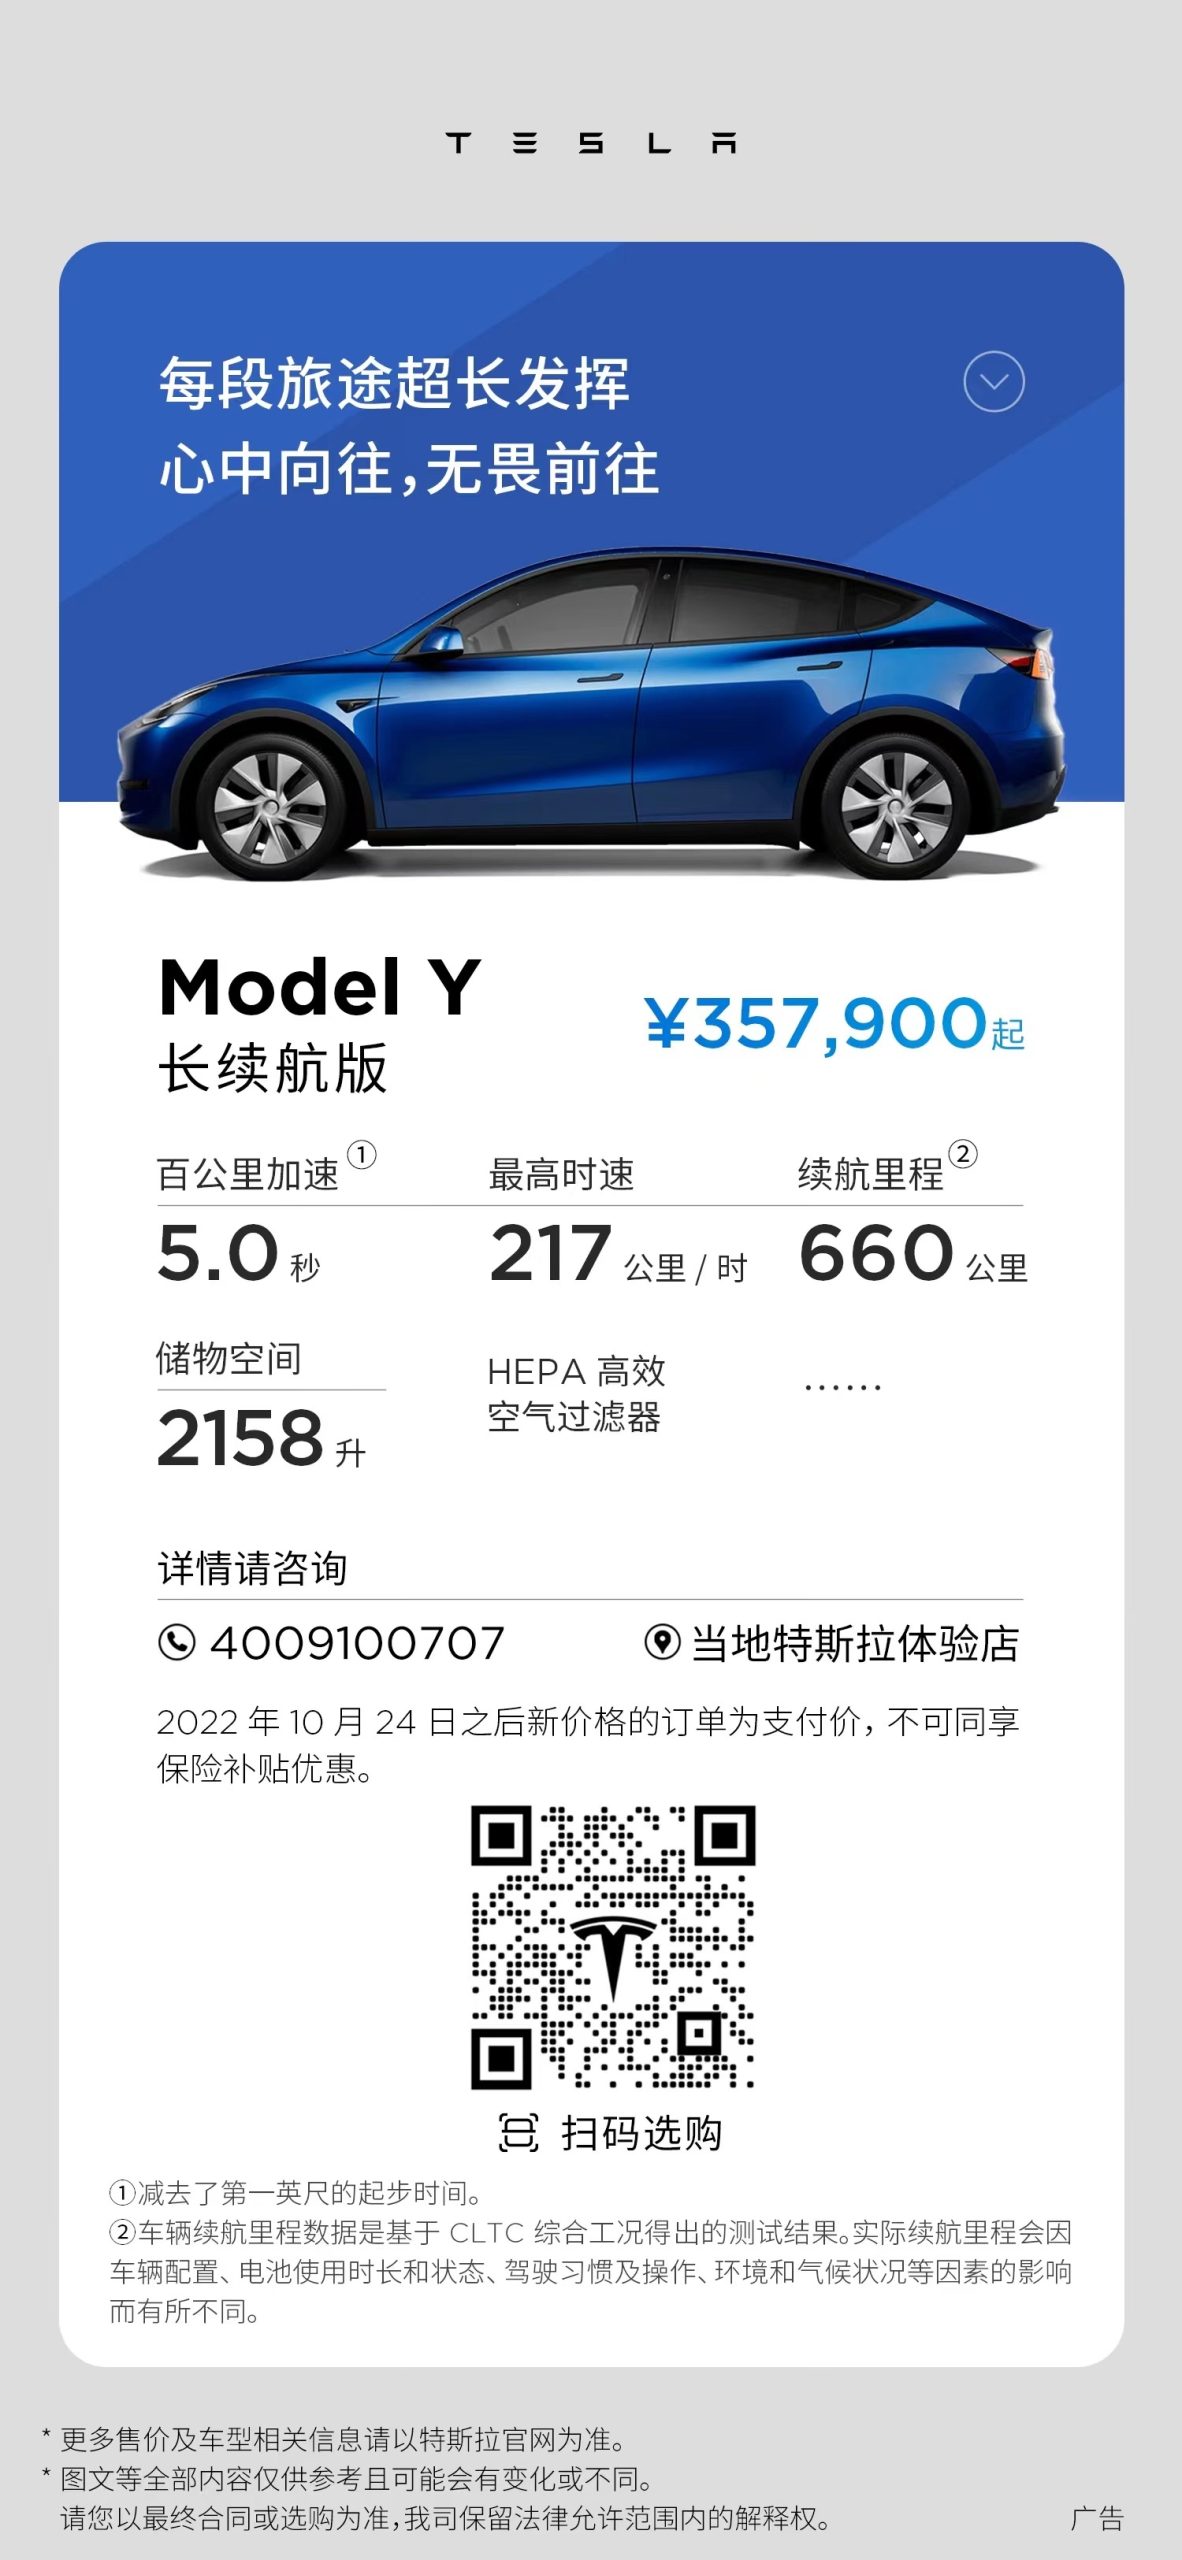 Tesla-china-Model-Y-long-range-price-cut